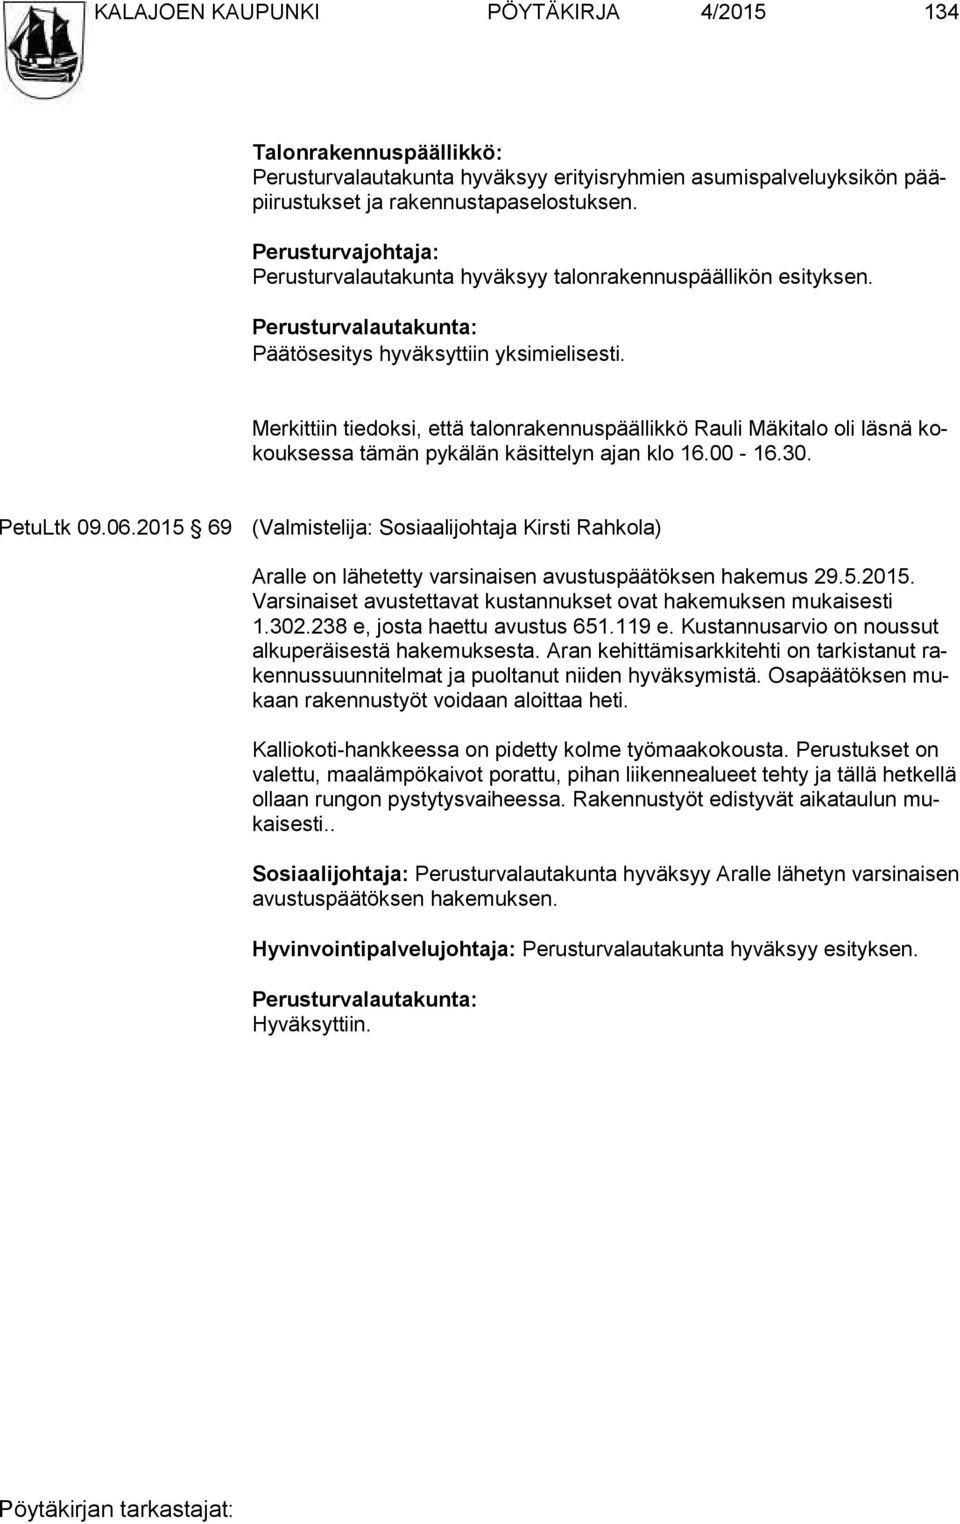 Merkittiin tiedoksi, että talonrakennuspäällikkö Rauli Mäkitalo oli läsnä kokouksessa tämän pykälän käsittelyn ajan klo 16.00-16.30. PetuLtk 09.06.